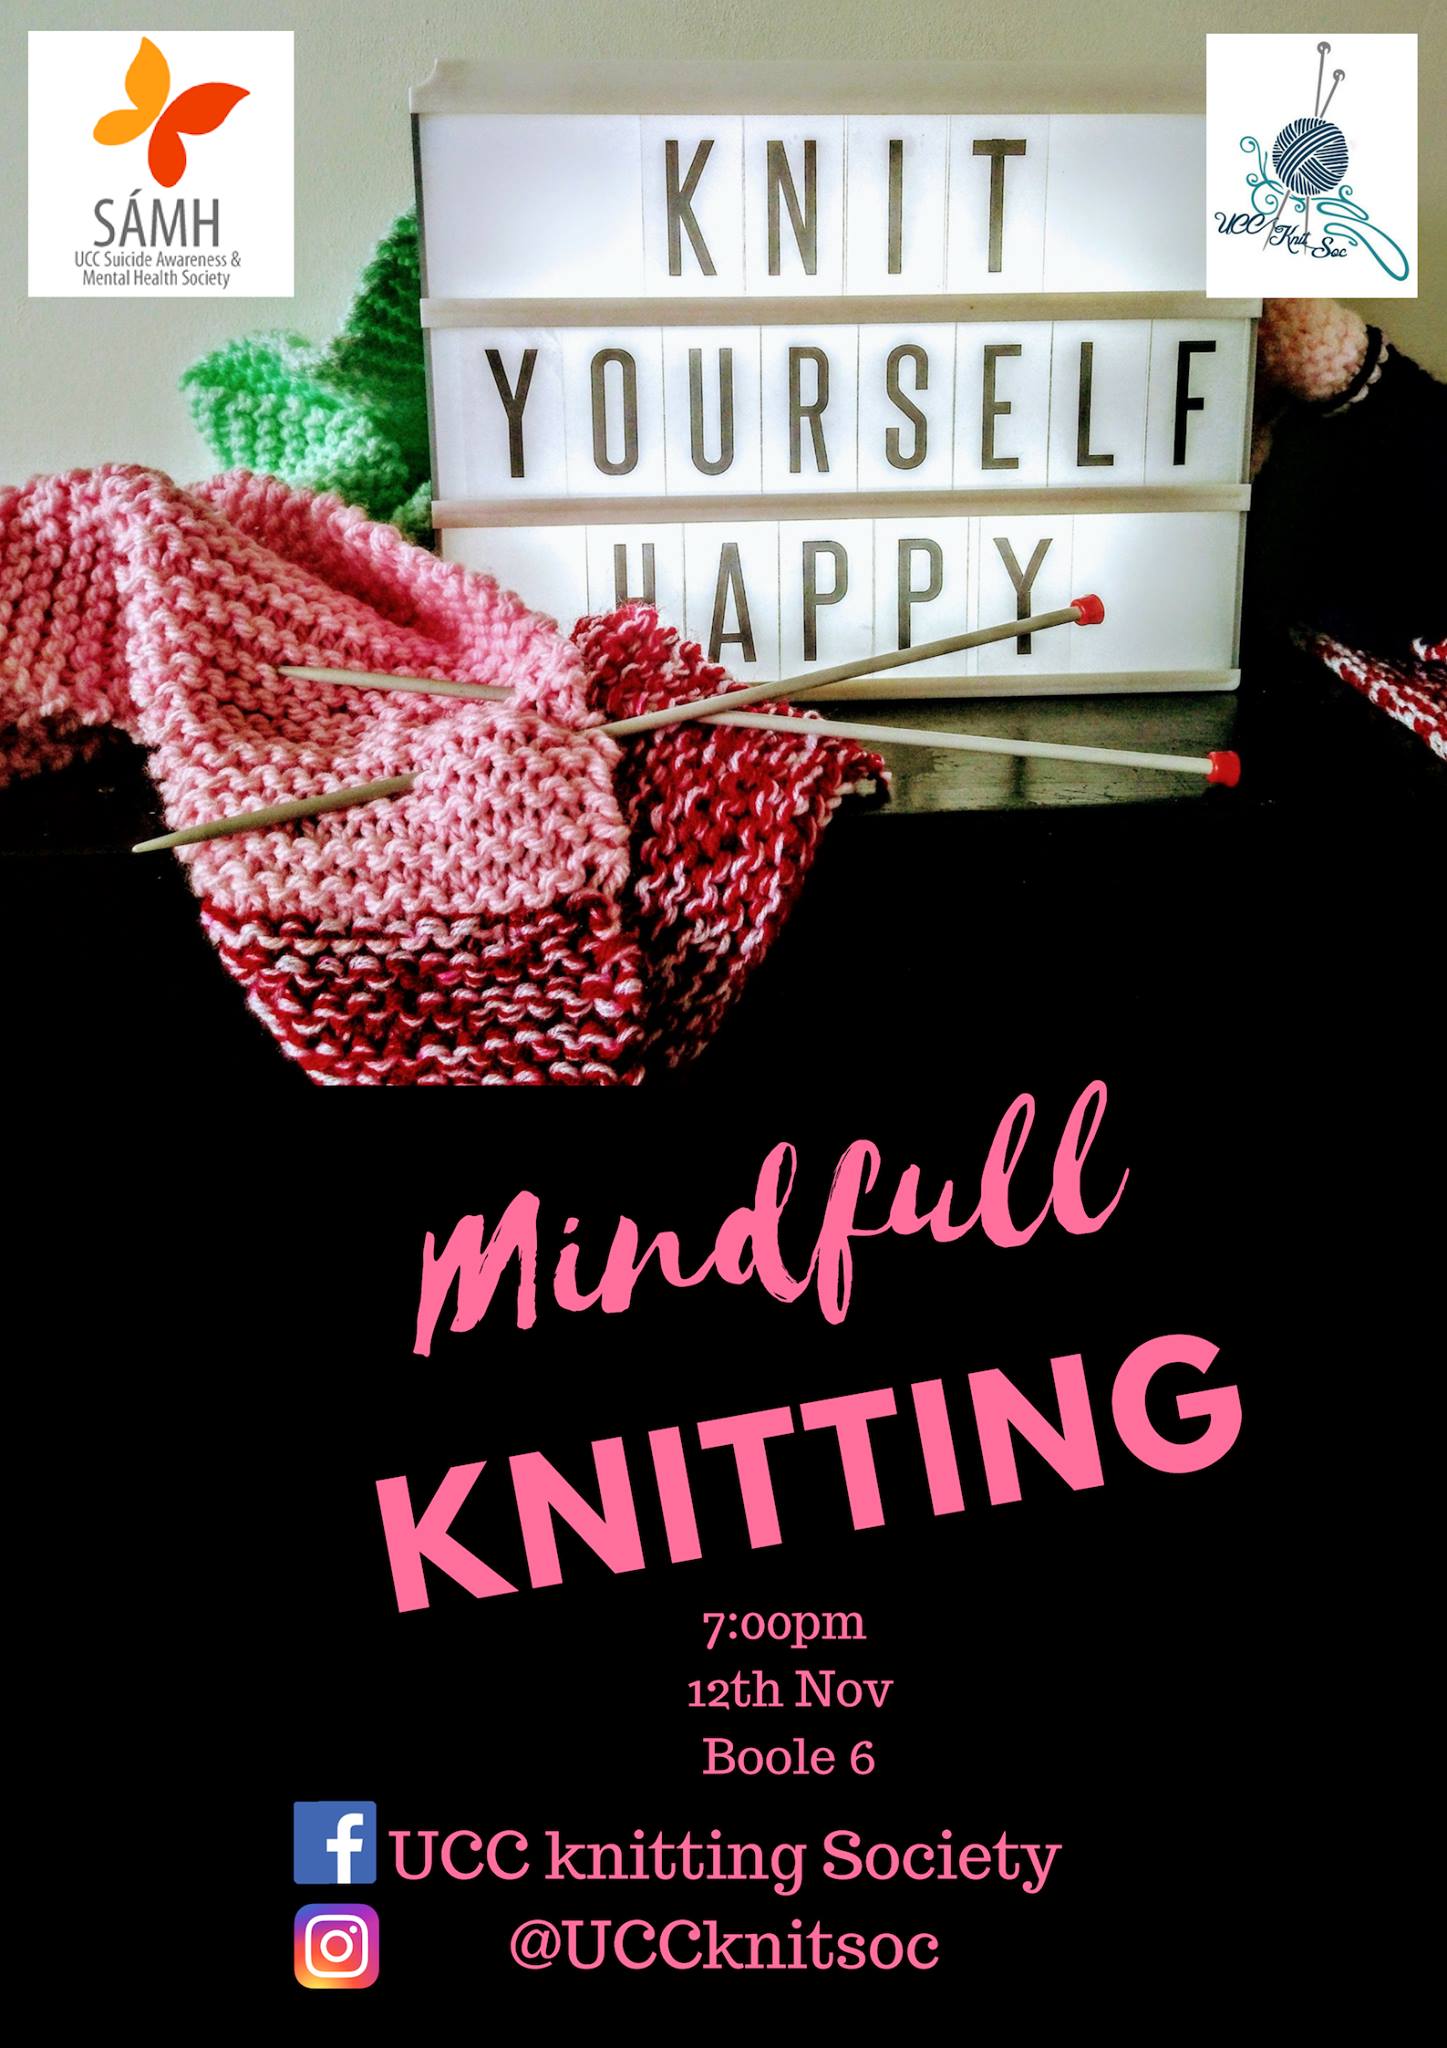 Mindfull Knitting - 12th November